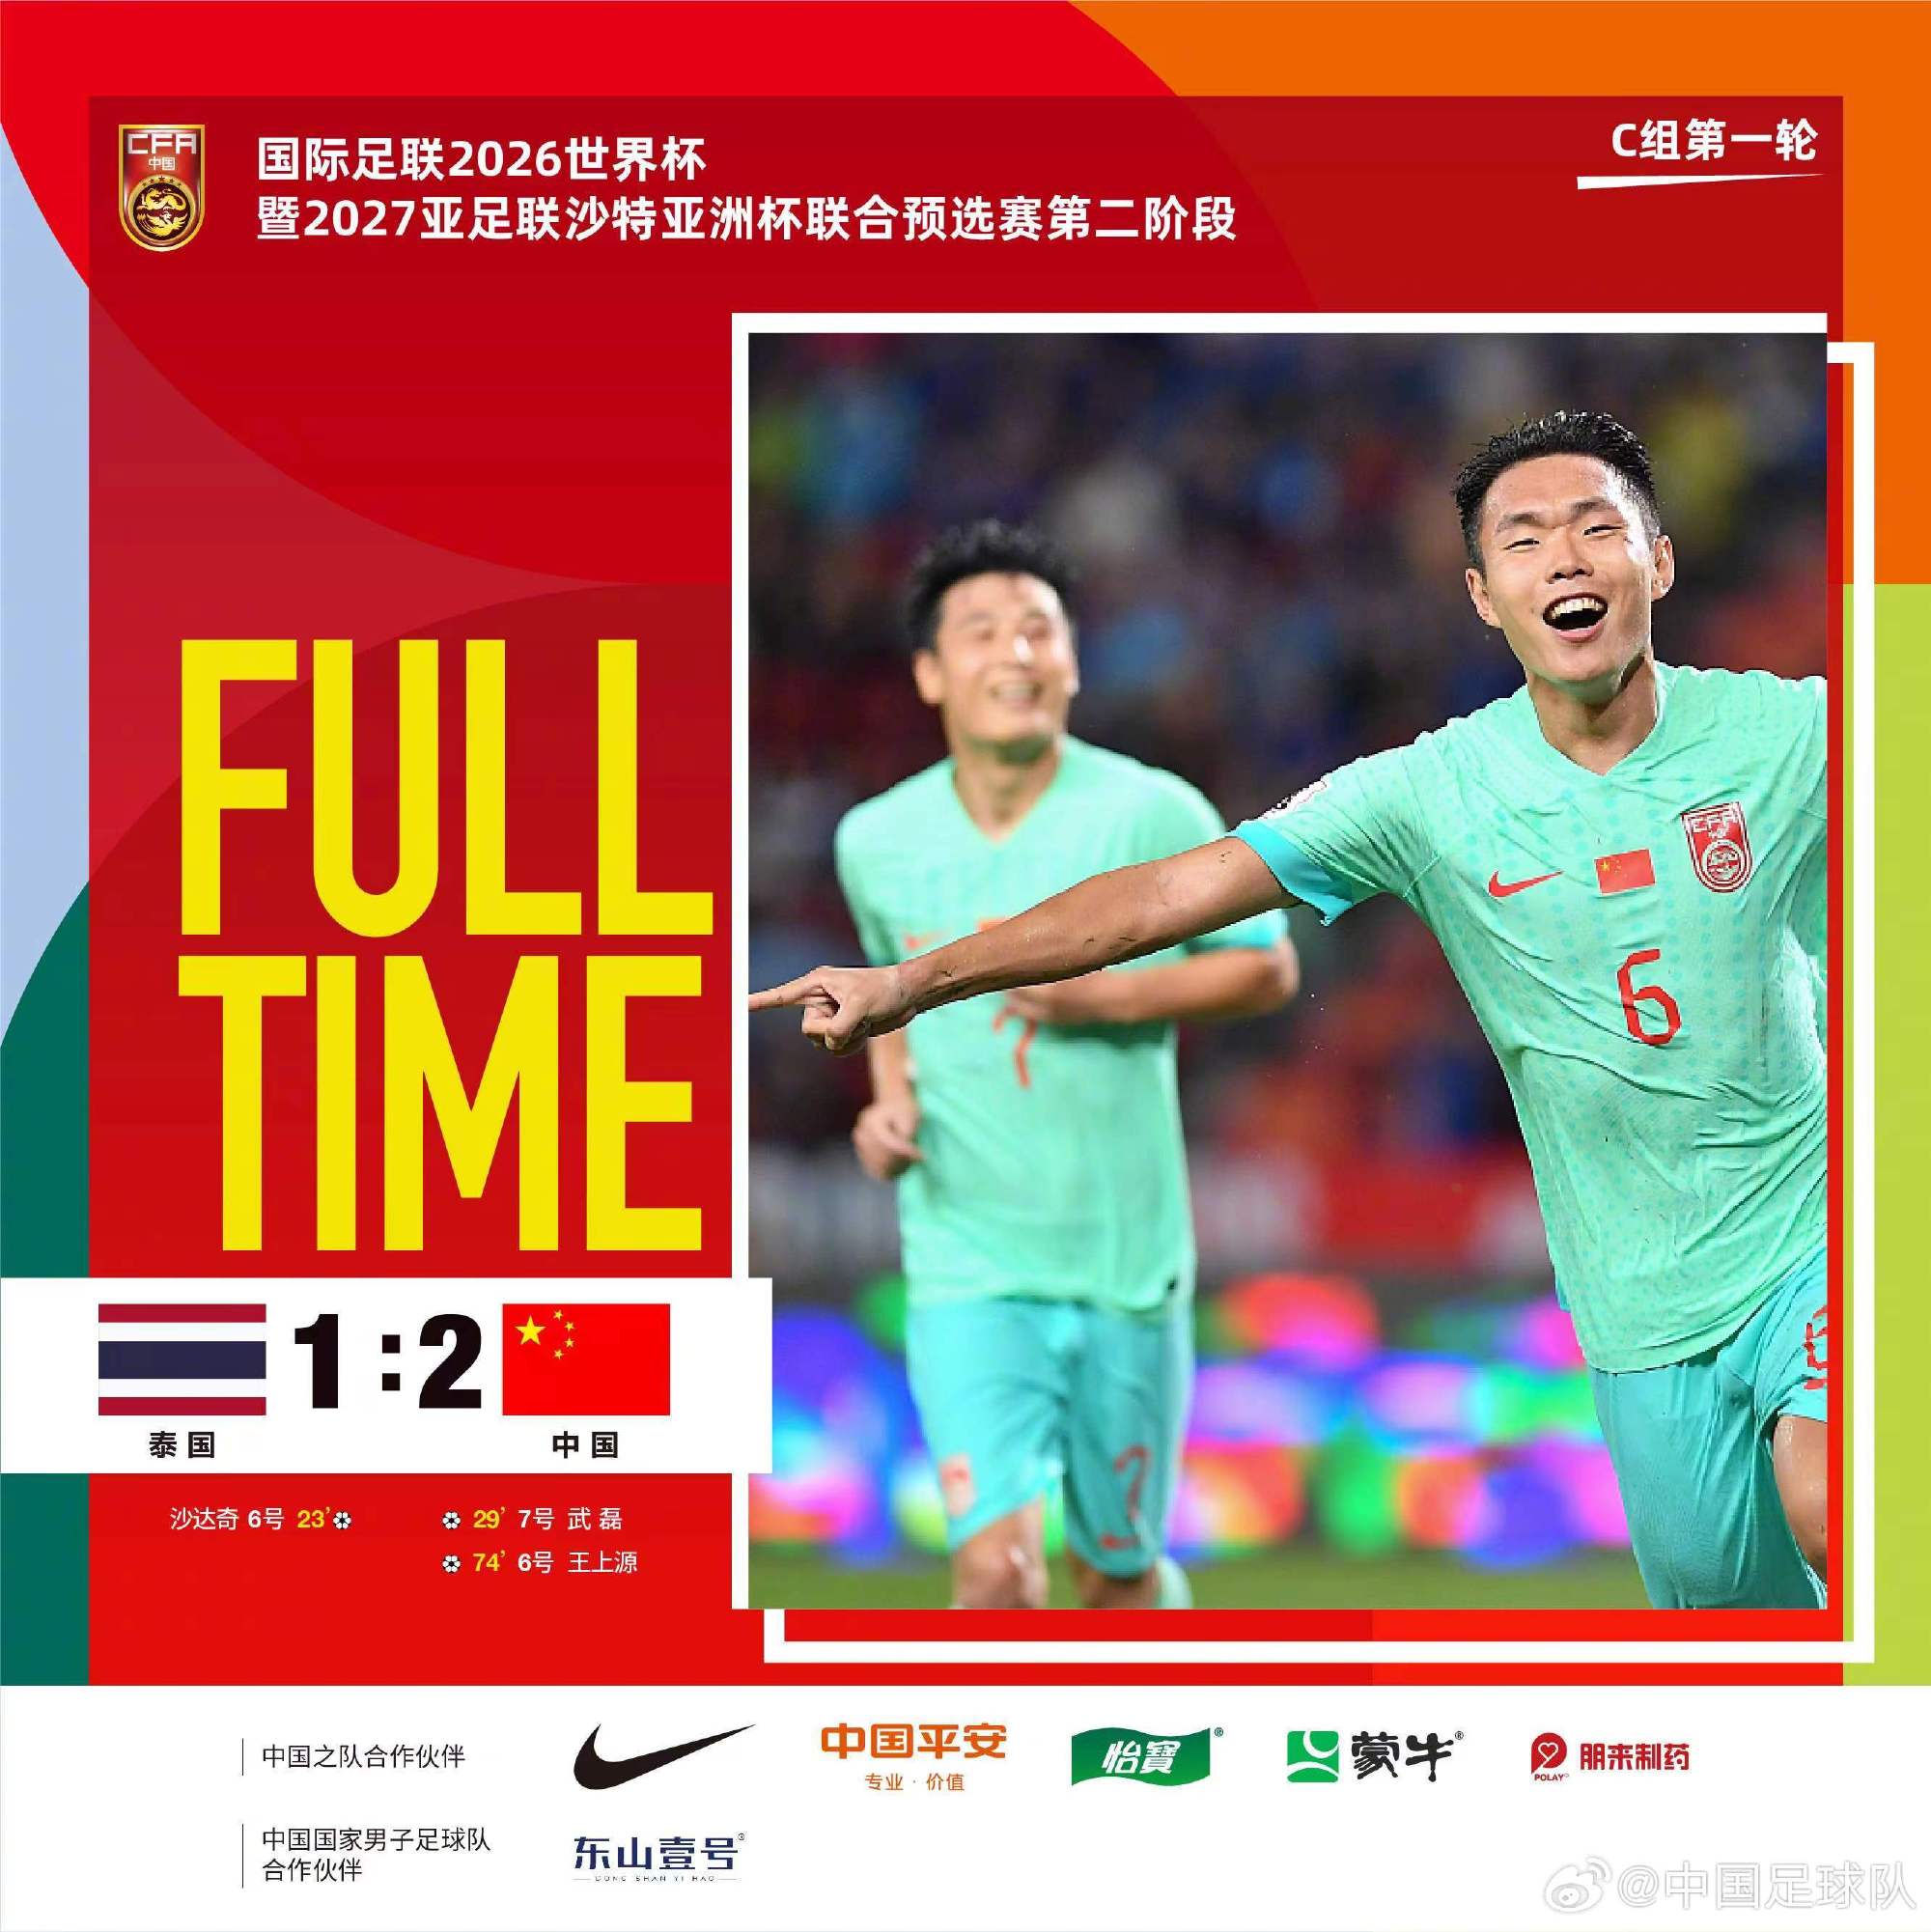 27亚足联沙特亚洲杯联合预选赛第二阶段的比赛中,中国国家男子足球队